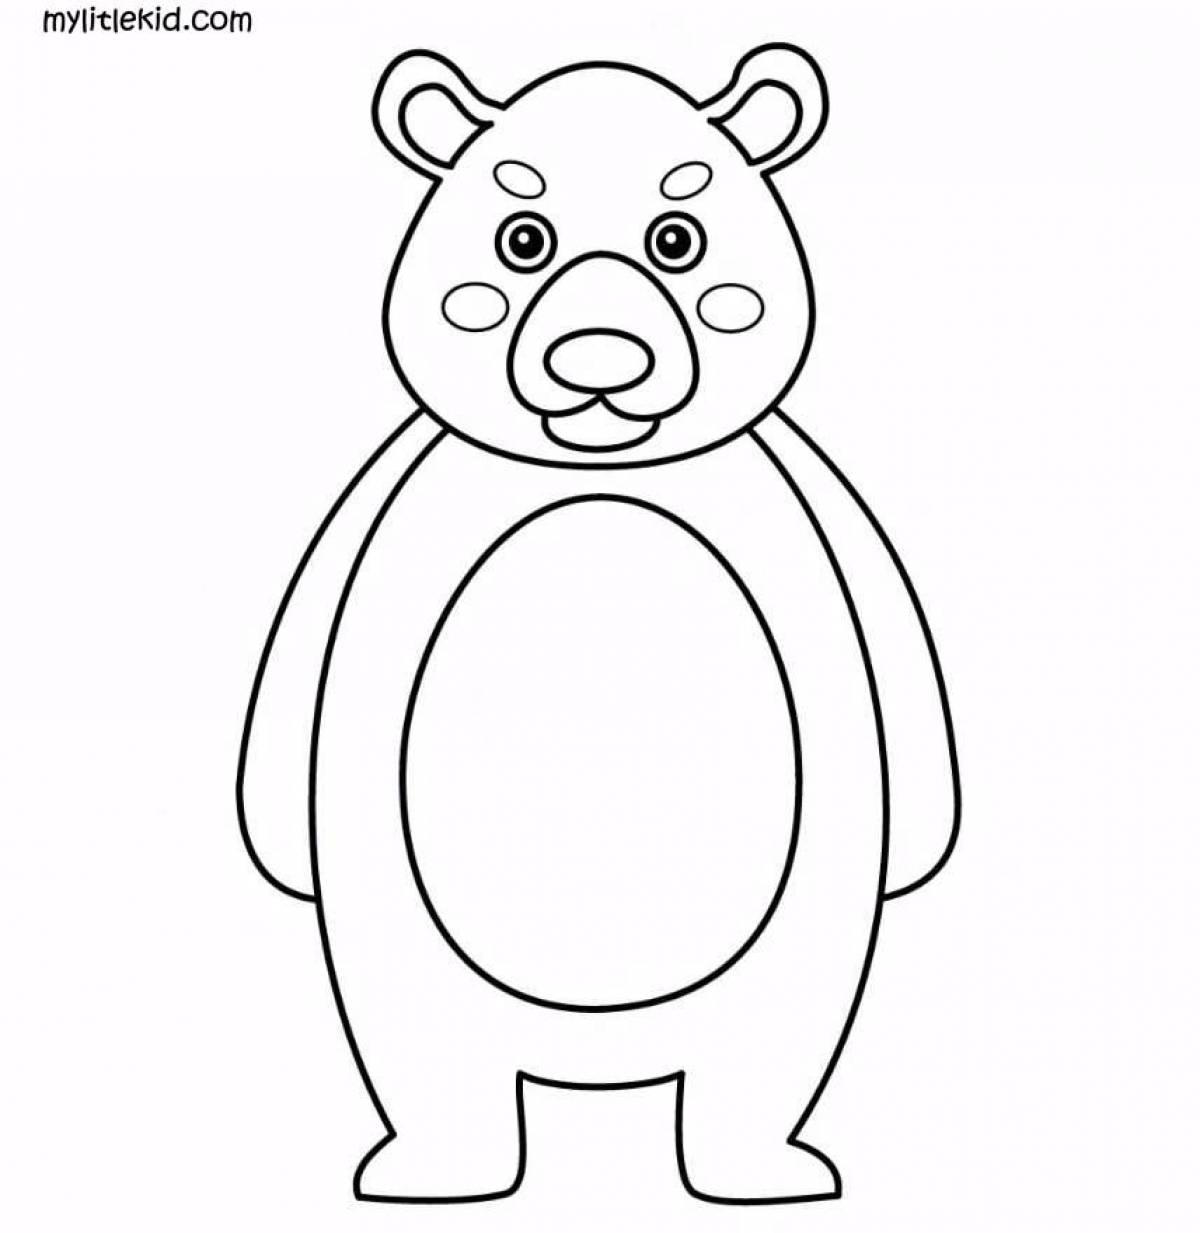 Раскраска медведь для детей 2 3 лет. Медведь раскраска для детей. Медведь для раскрашивания детям. Медвежонок раскраска для детей. Мишка раскраска для малышей.